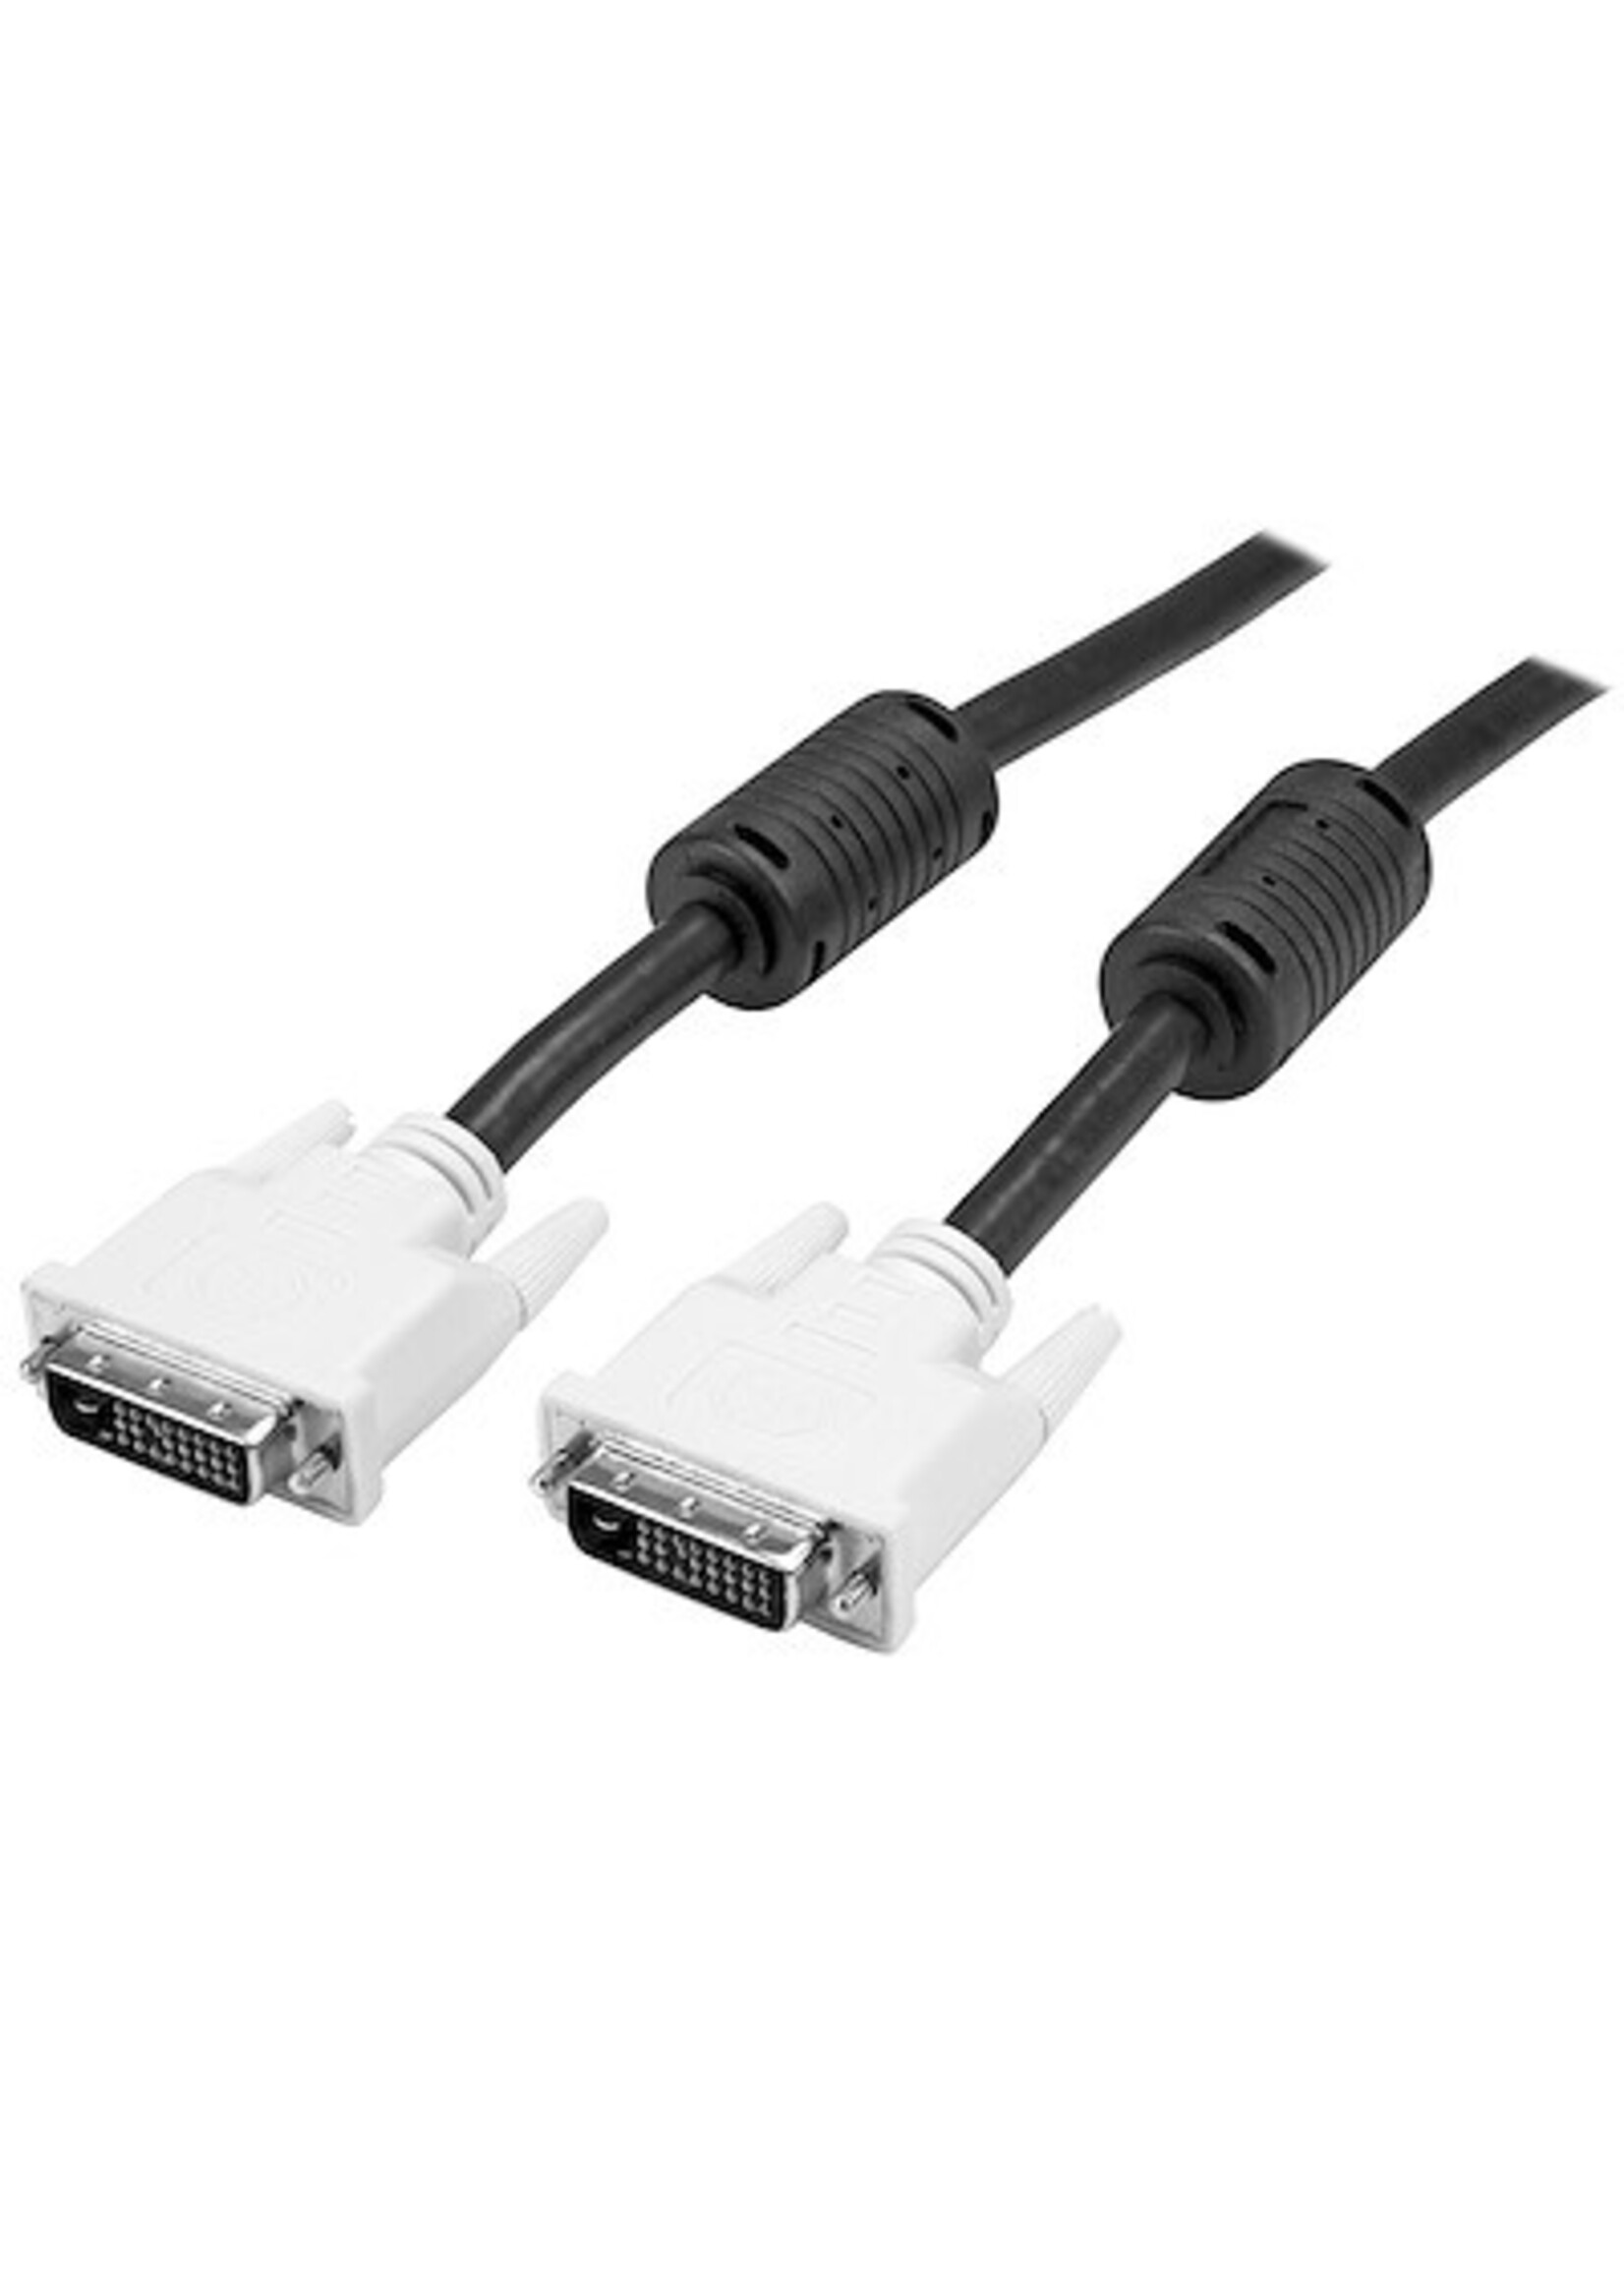 Startech 15' DVI Dual-Link Cable M/M